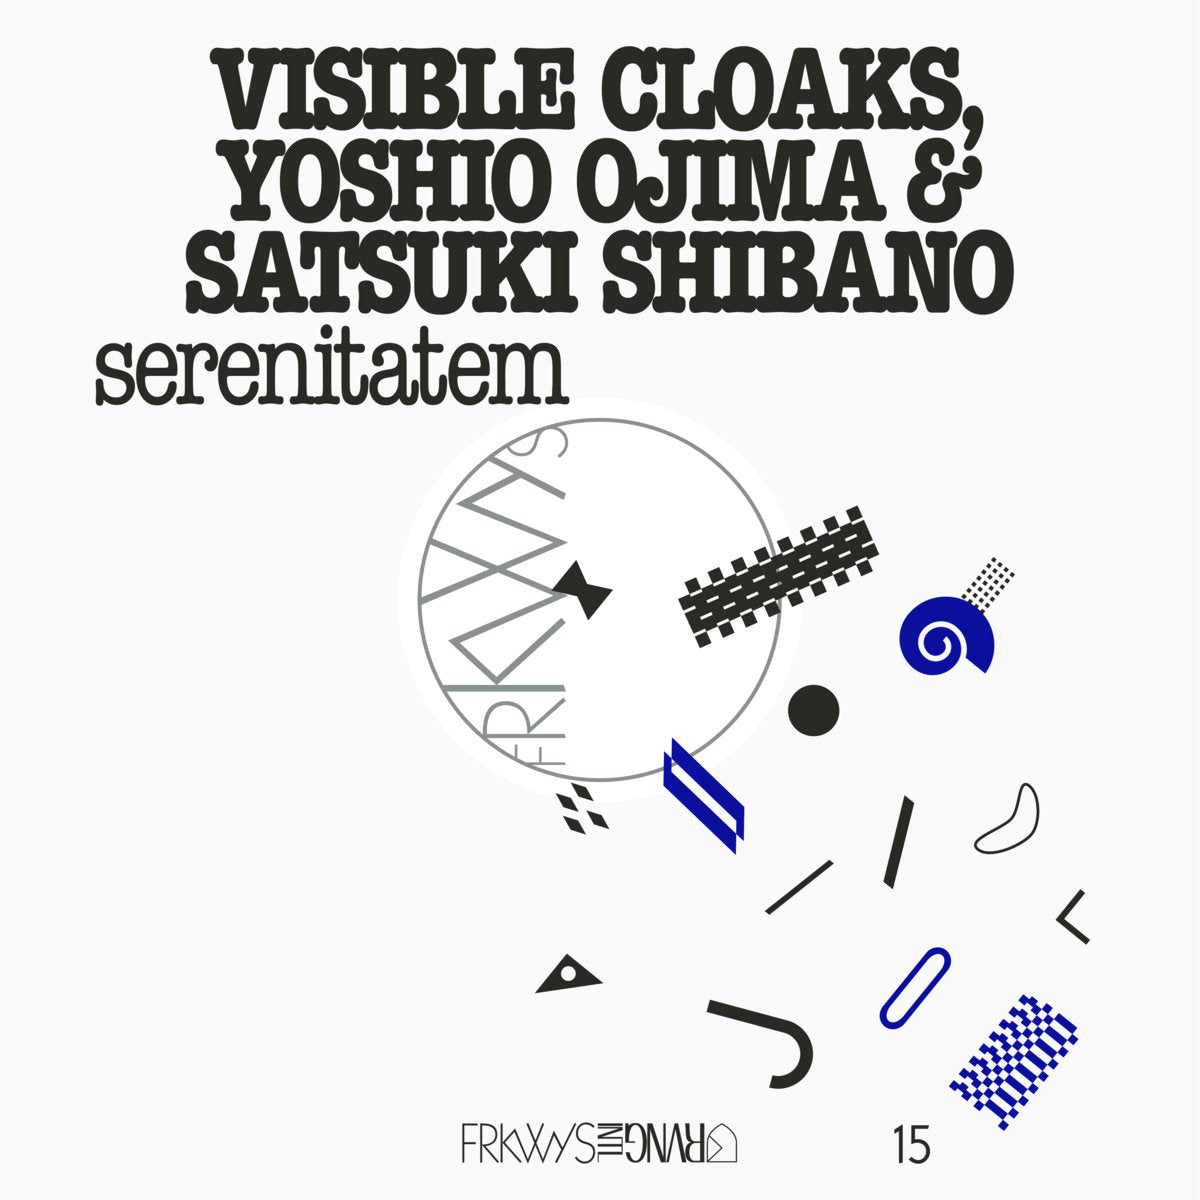 Visible Cloaks, Yoshio Ojima & Satsuki Shibano - Serenitatem